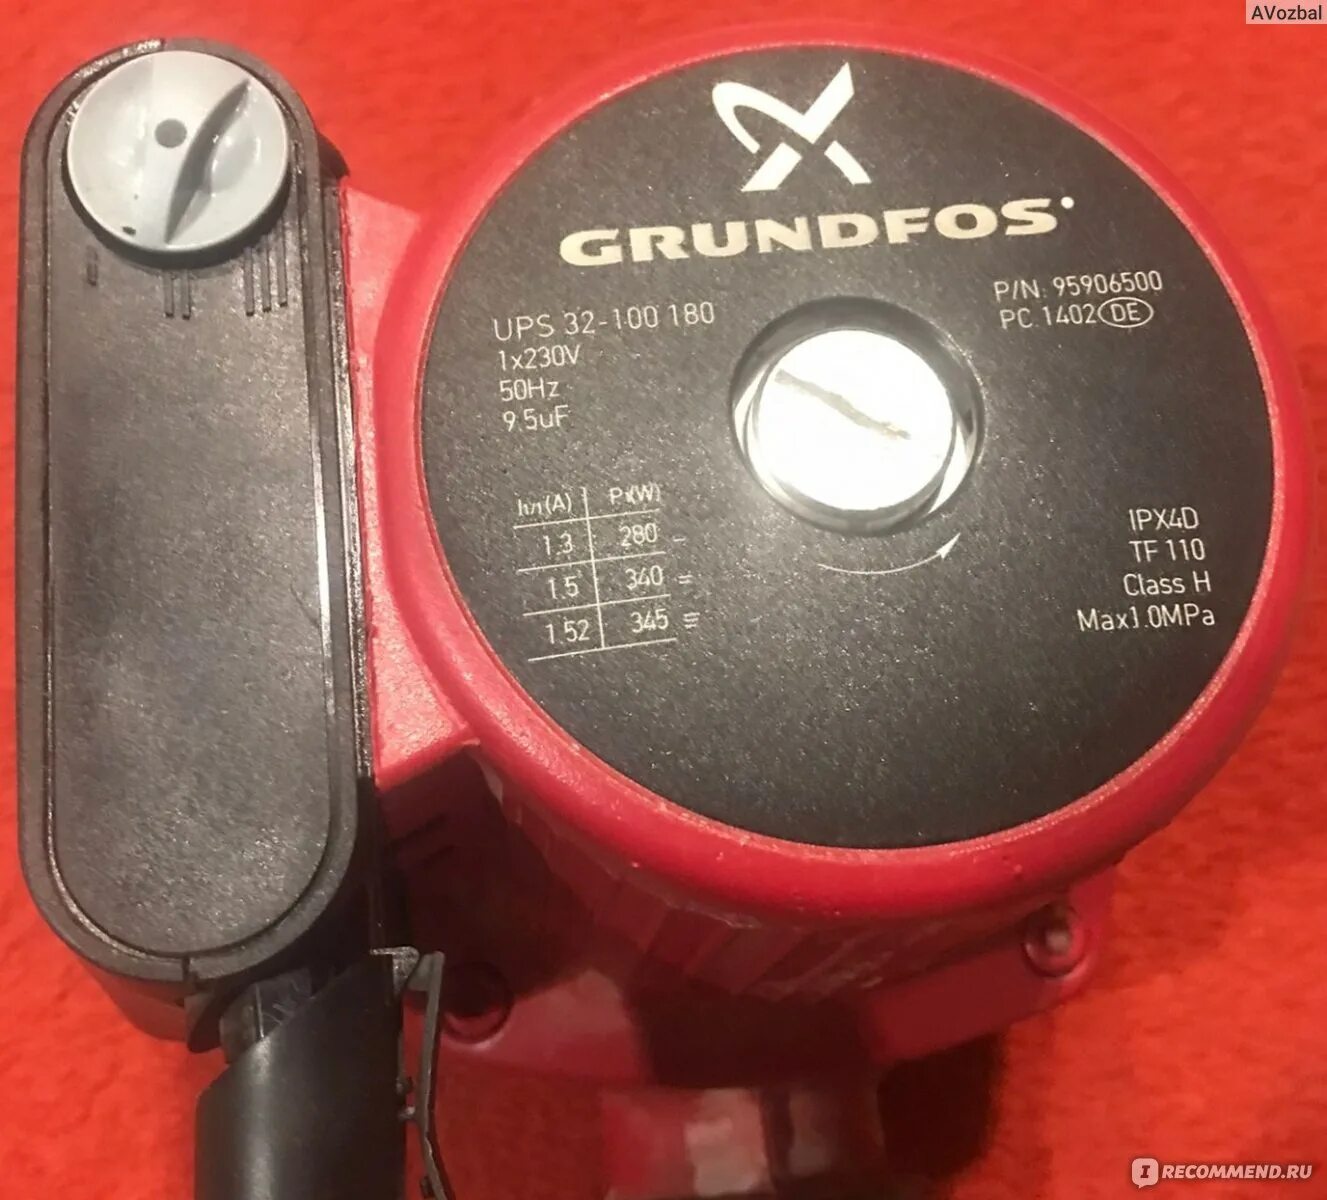 Grundfos ups 32-100. Grundfos ups 32 180. Grundfos ups 25-100 180. Grundfos ups 32-100 180 характеристики.